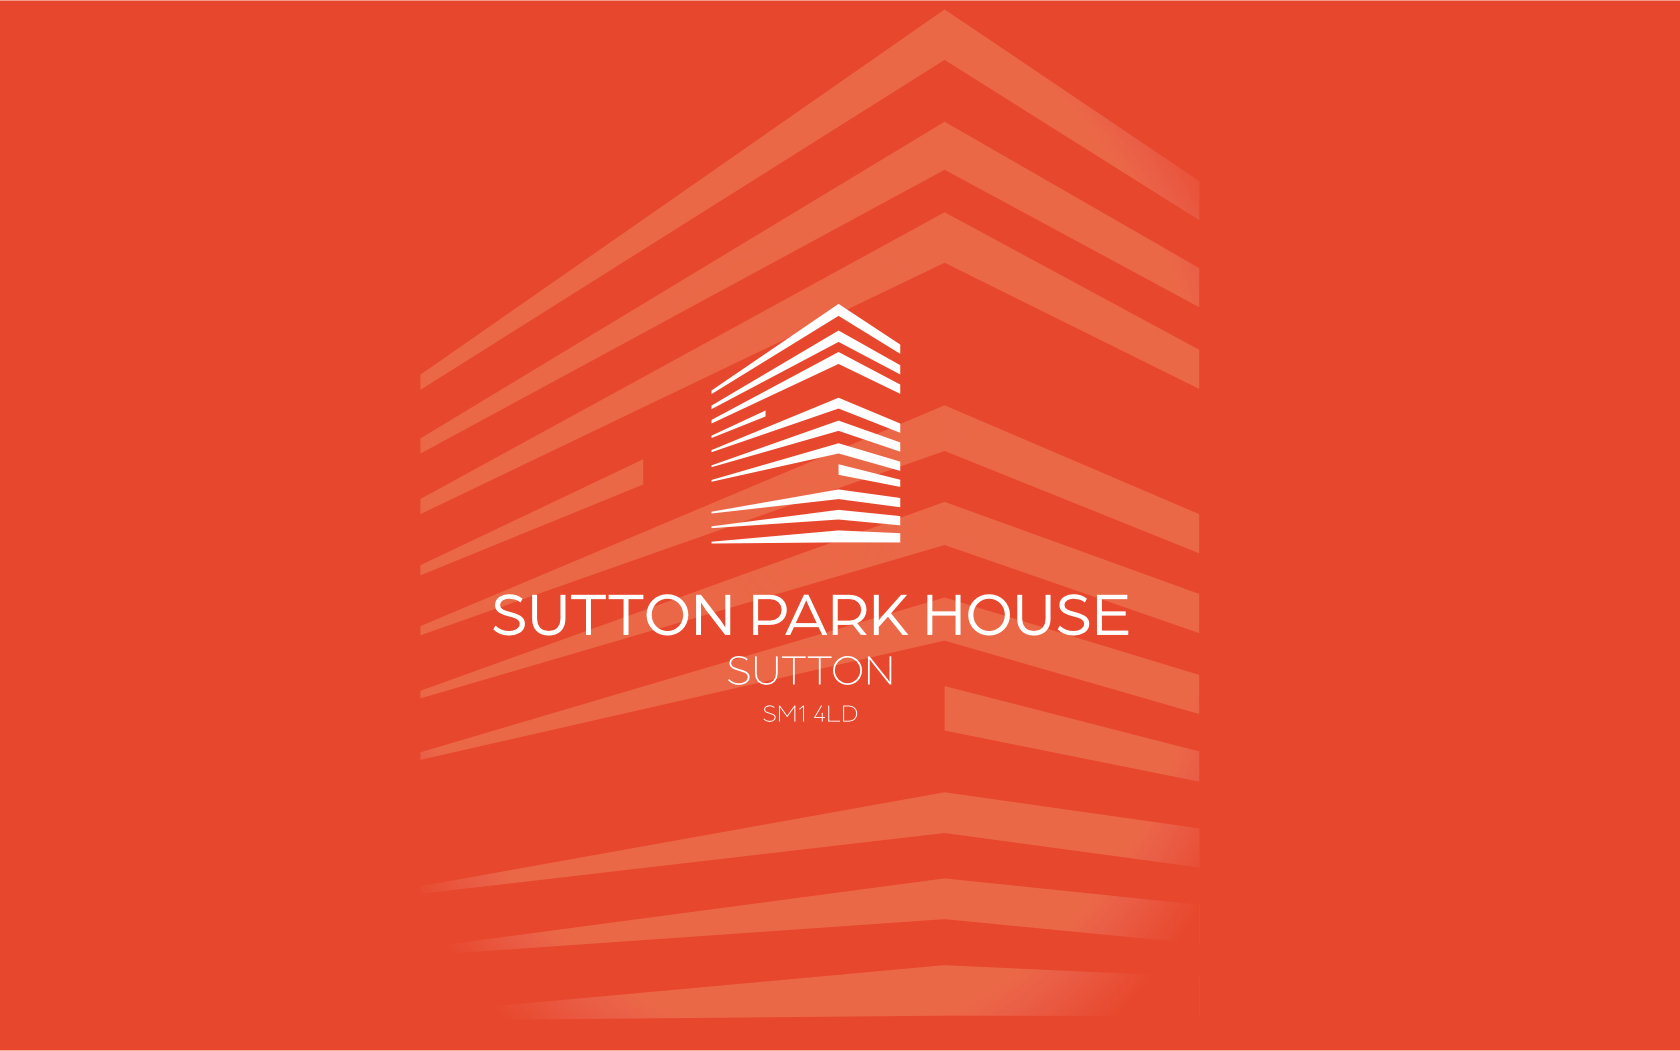 Sutton Park House